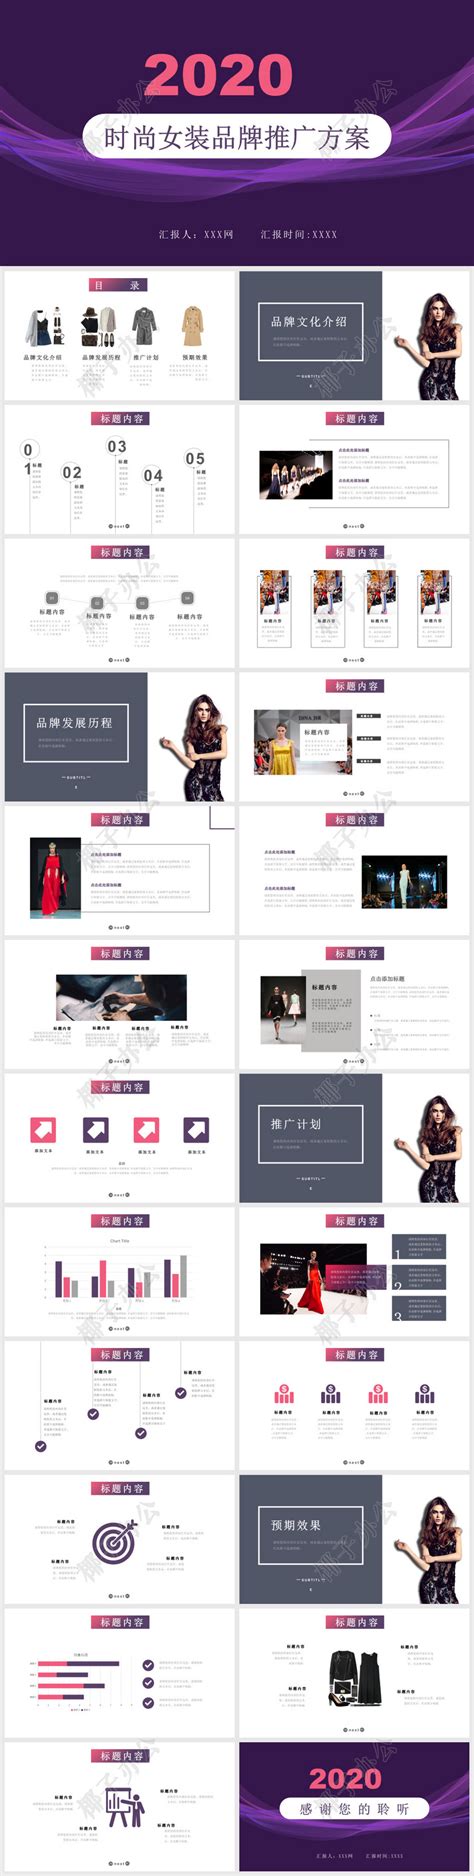 制作商业广告时尚女装店模特手册促销品牌活动介绍预告片-AE模板下载 | CG资源网